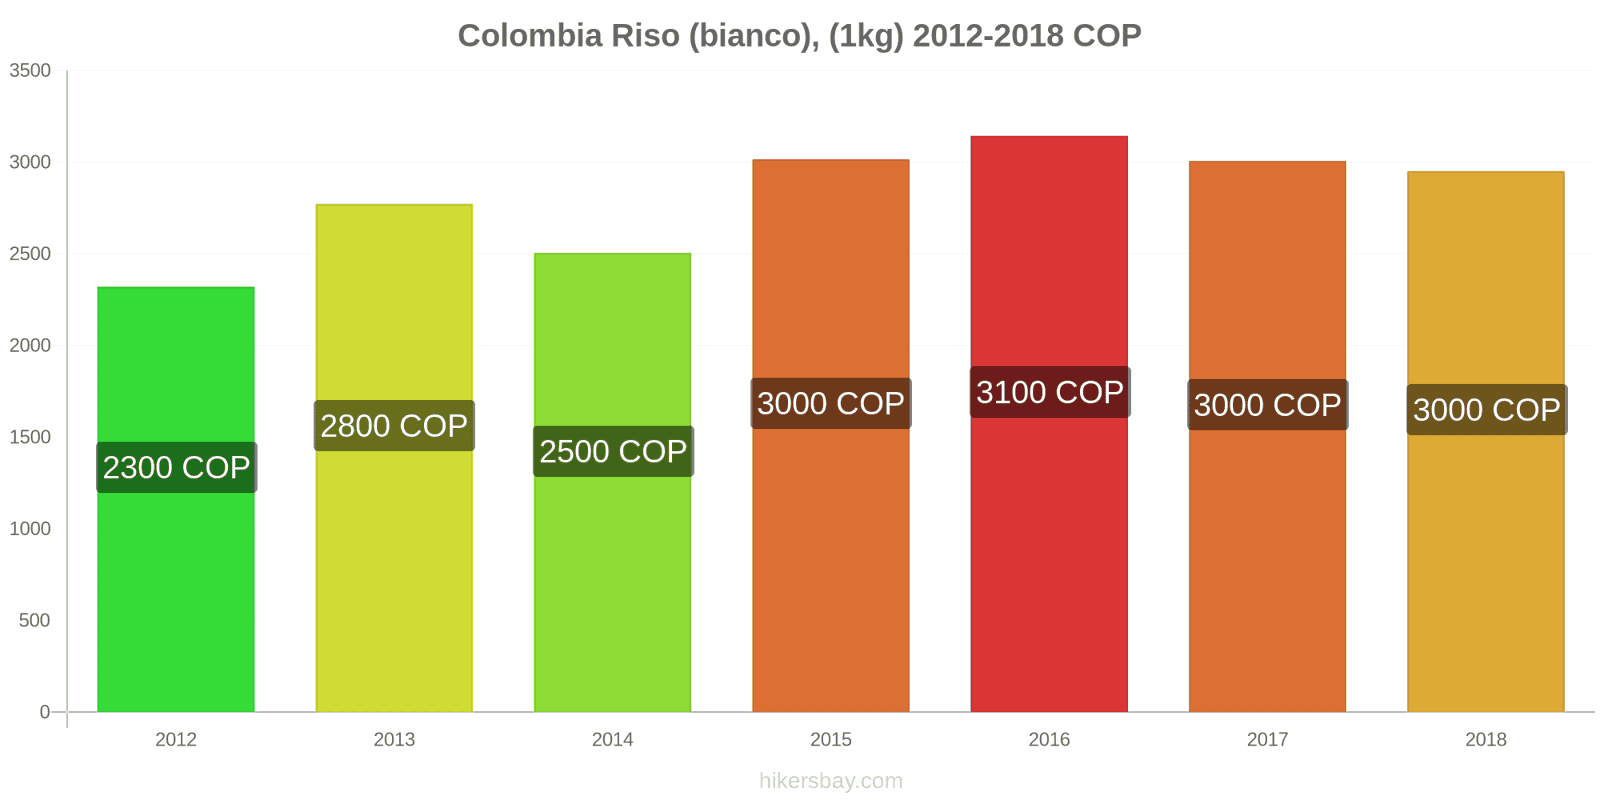 Colombia cambi di prezzo Chilo di riso bianco hikersbay.com